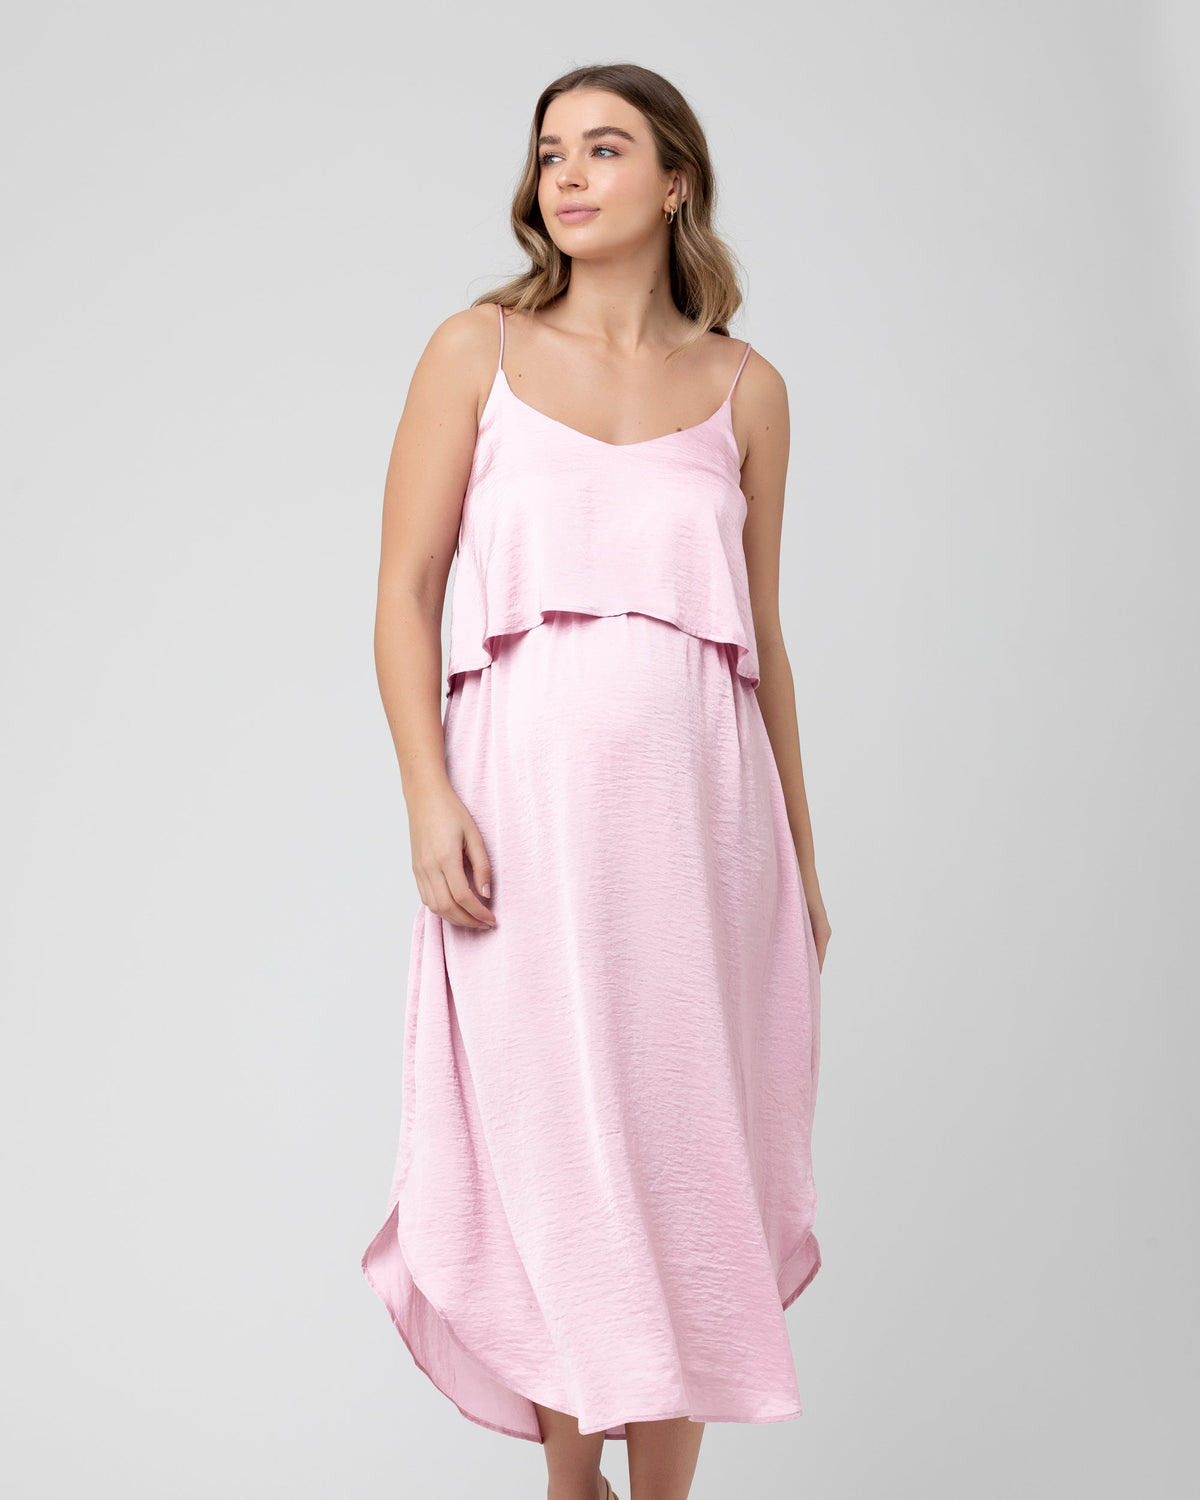 Nursing Slip Dress - Pink